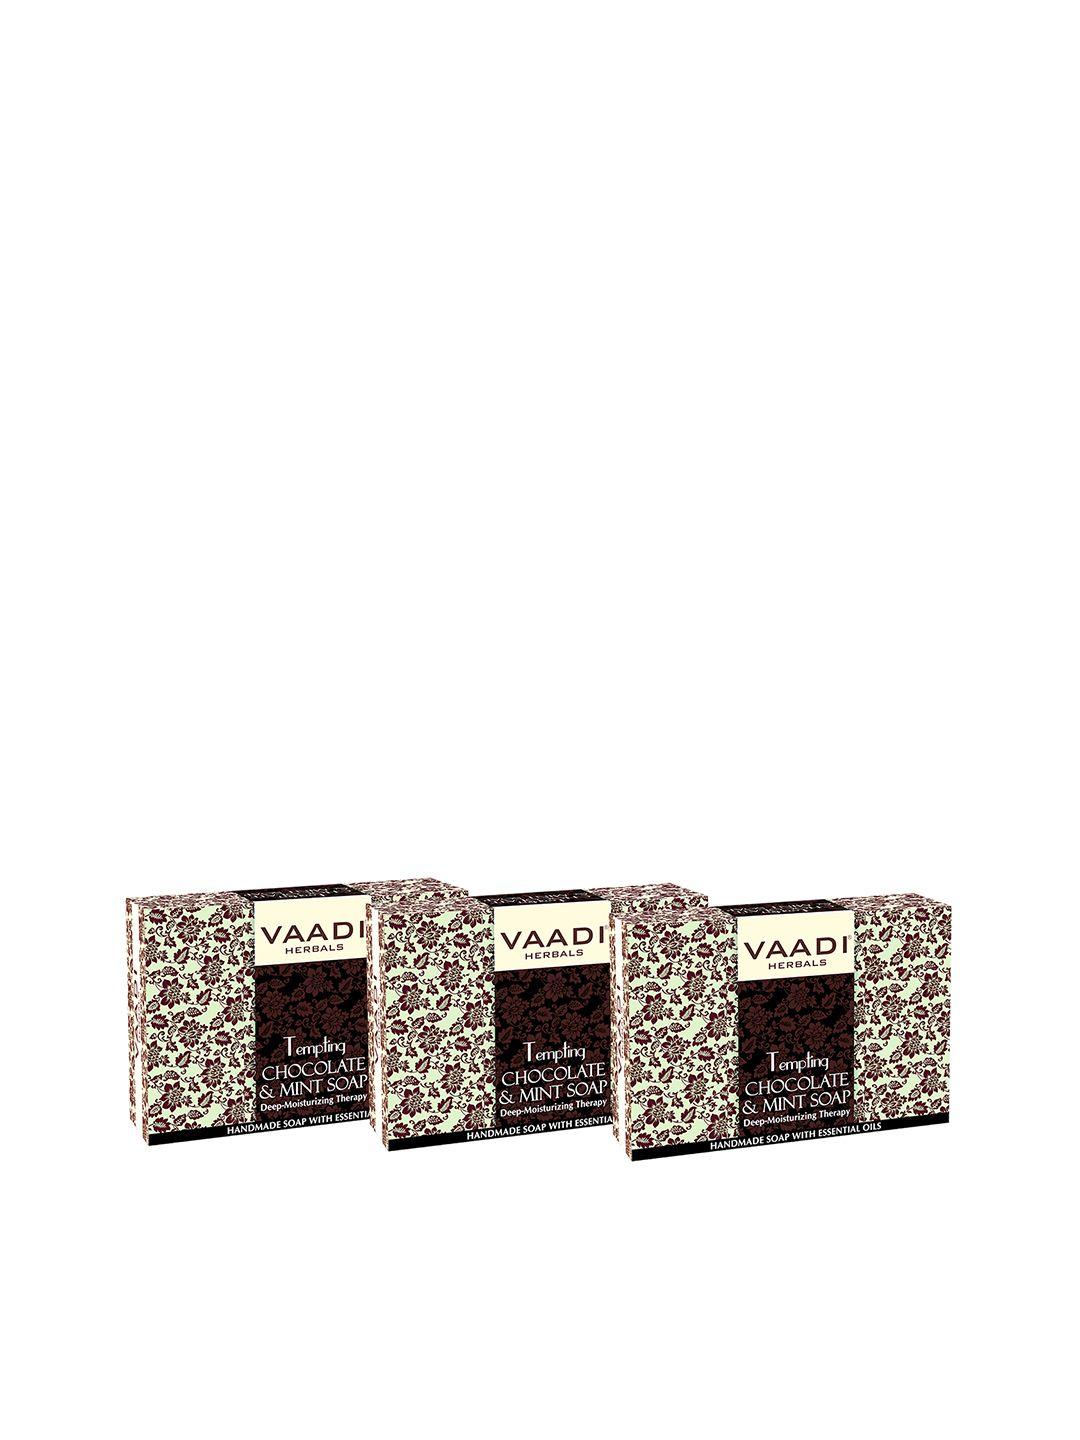 vaadi herbals set of 3 tempting chocolate & mint soaps - 75g each